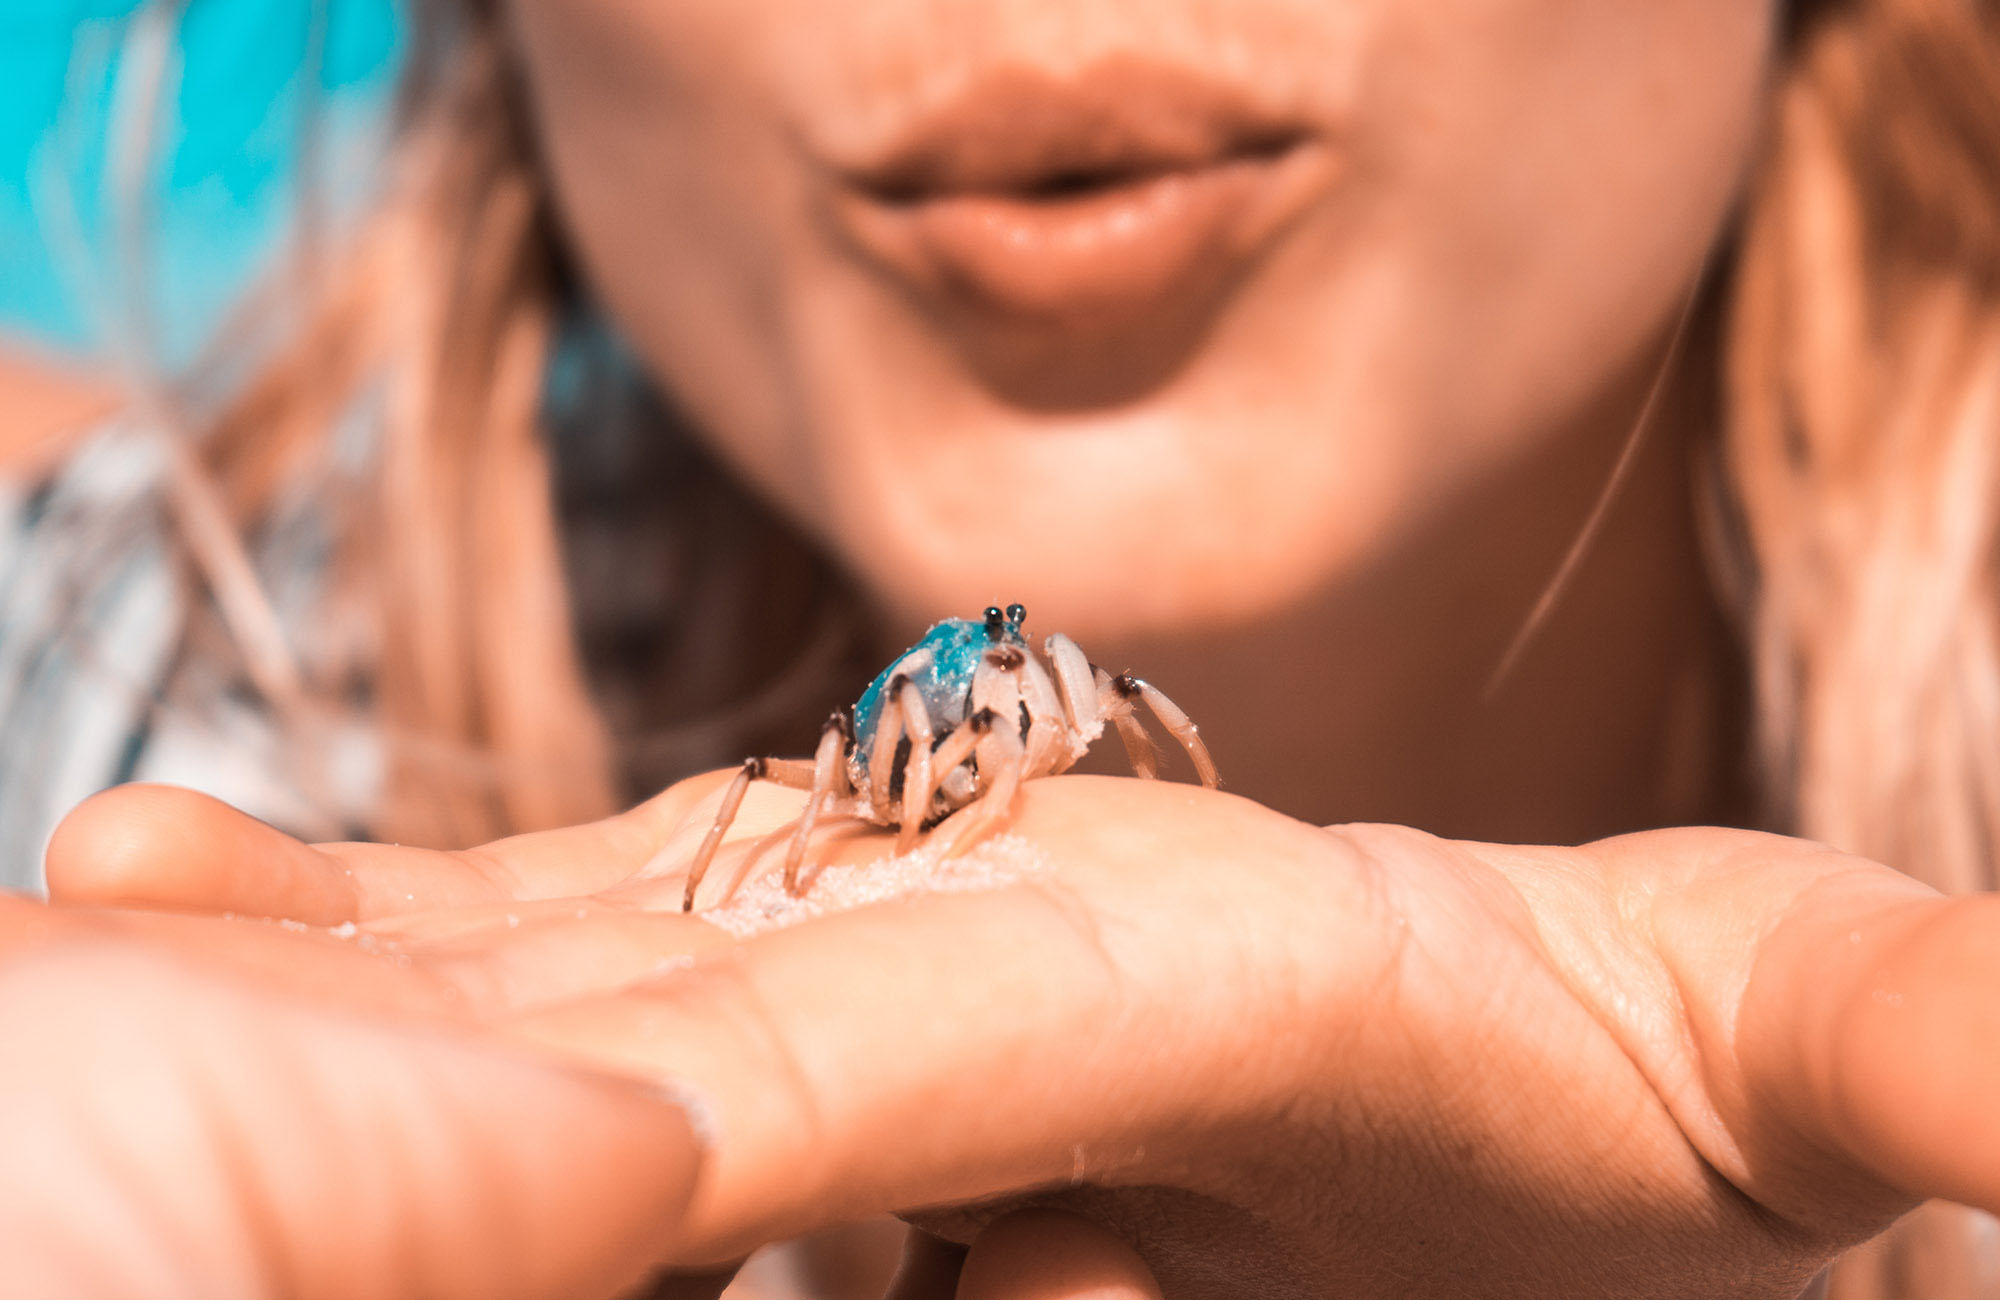 Vrouw met kleine krab op haar hand in Fraser Island, Australië